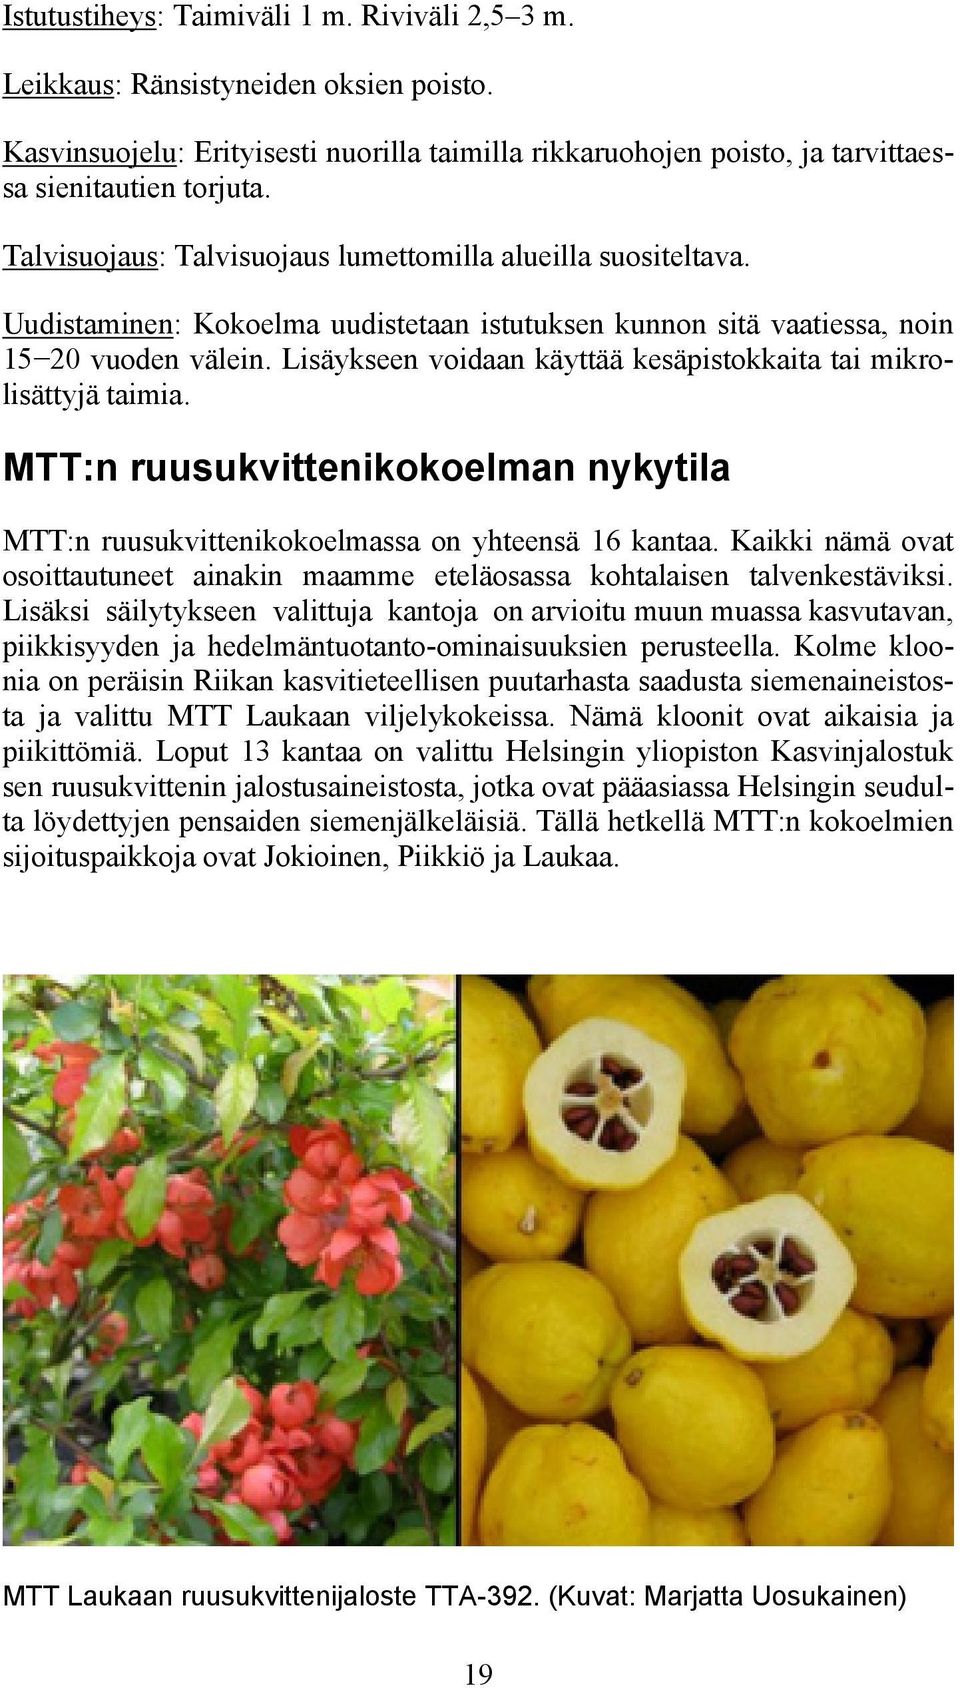 Lisäykseen voidaan käyttää kesäpistokkaita tai mikrolisättyjä taimia. MTT:n ruusukvittenikokoelman nykytila MTT:n ruusukvittenikokoelmassa on yhteensä 16 kantaa.